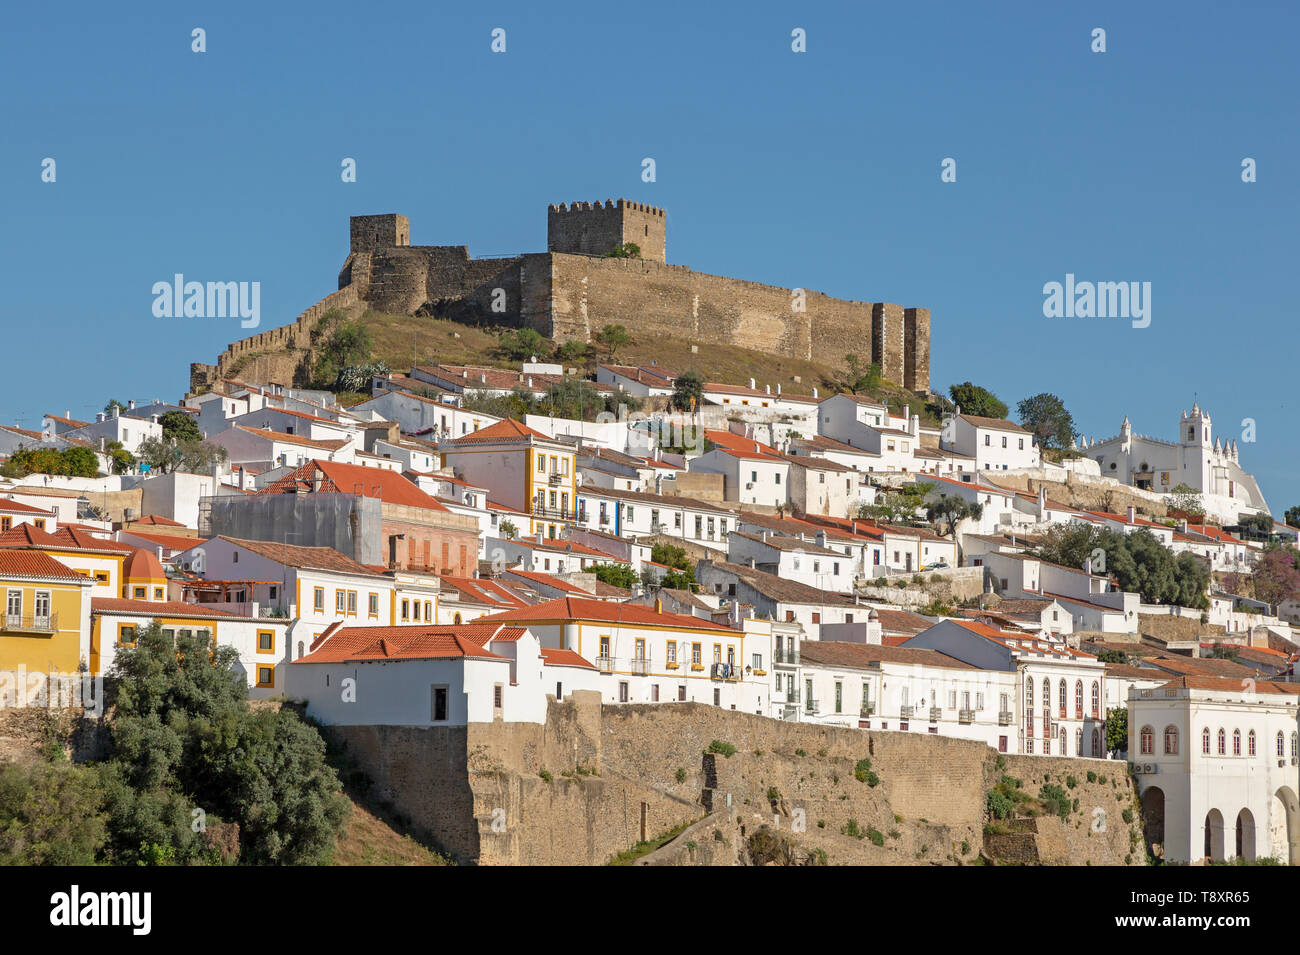 Historic hilltop village médiéval fortifié de Mértola avec château et remparts, Baixo Alentejo, Portugal, Sud de l'Europe Banque D'Images